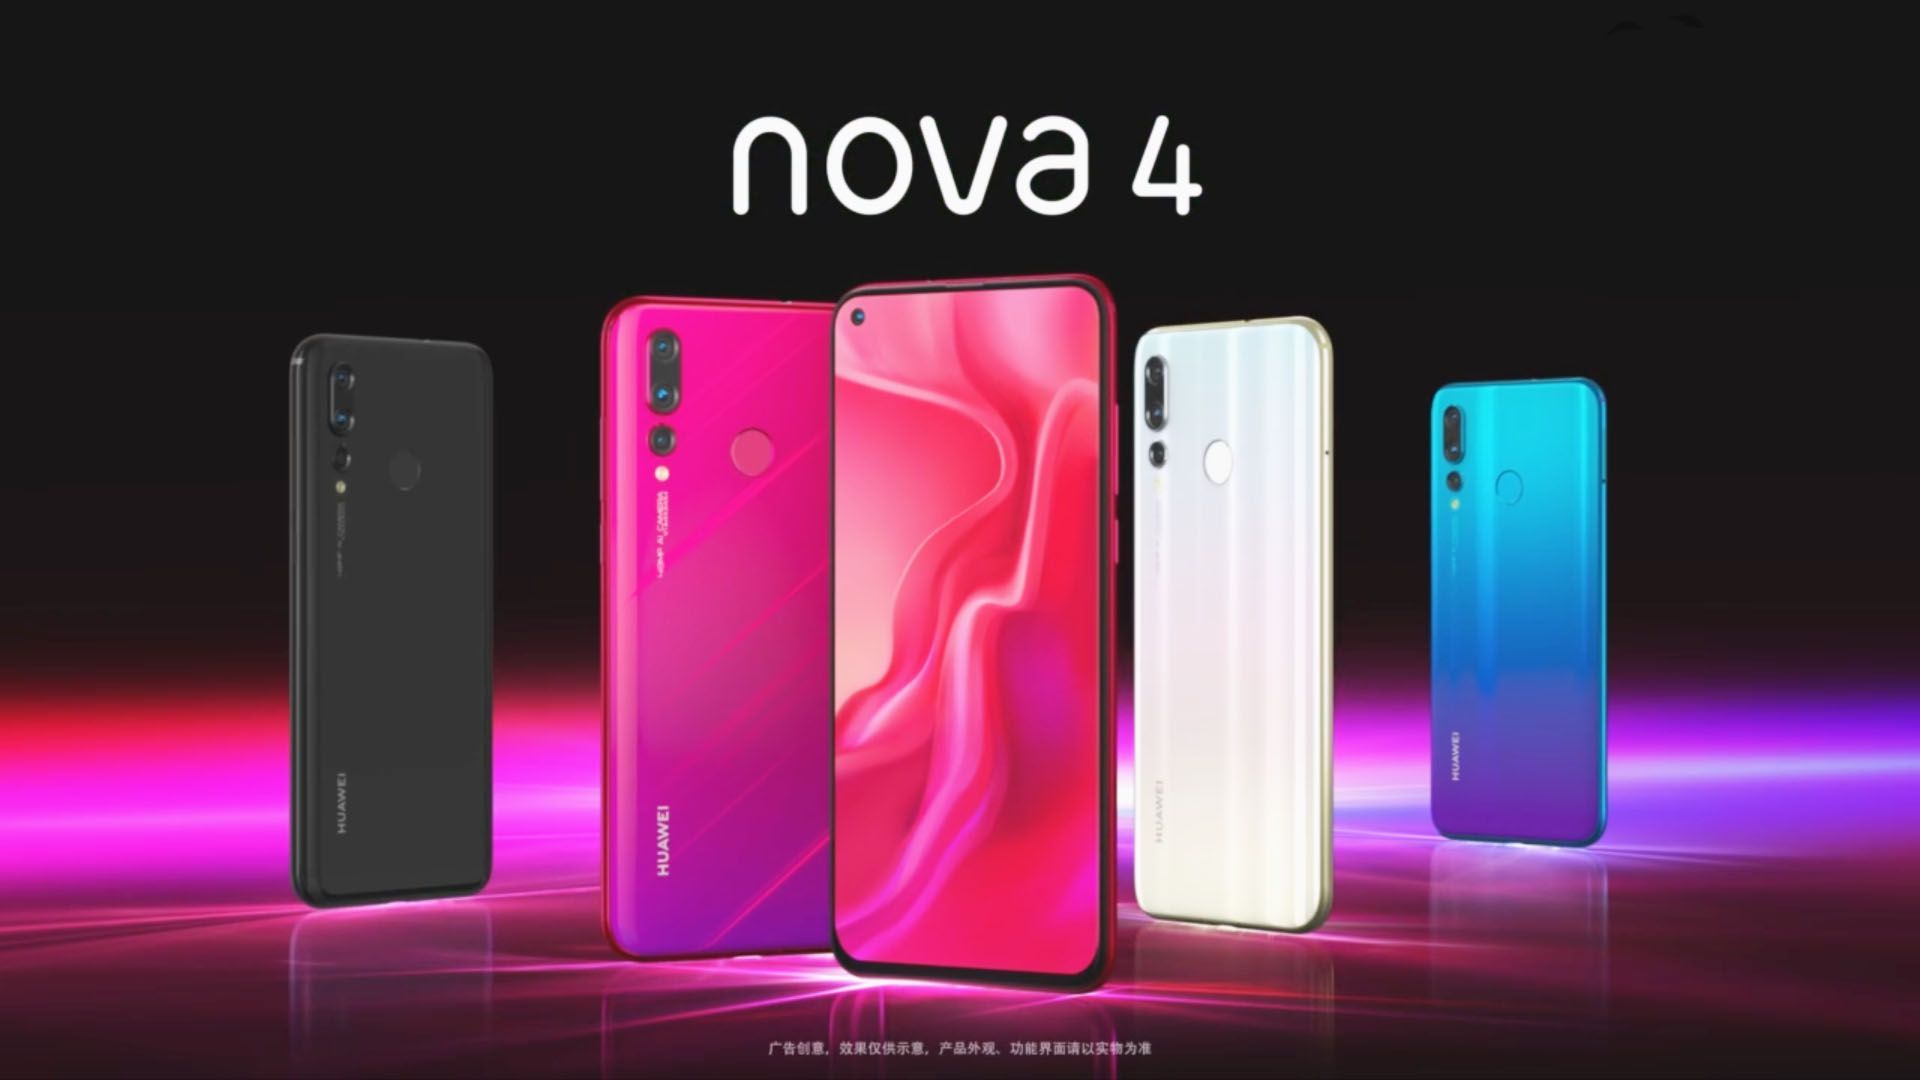 Huawei запустила Nova 4 с'punch hole display' and 48MP camera